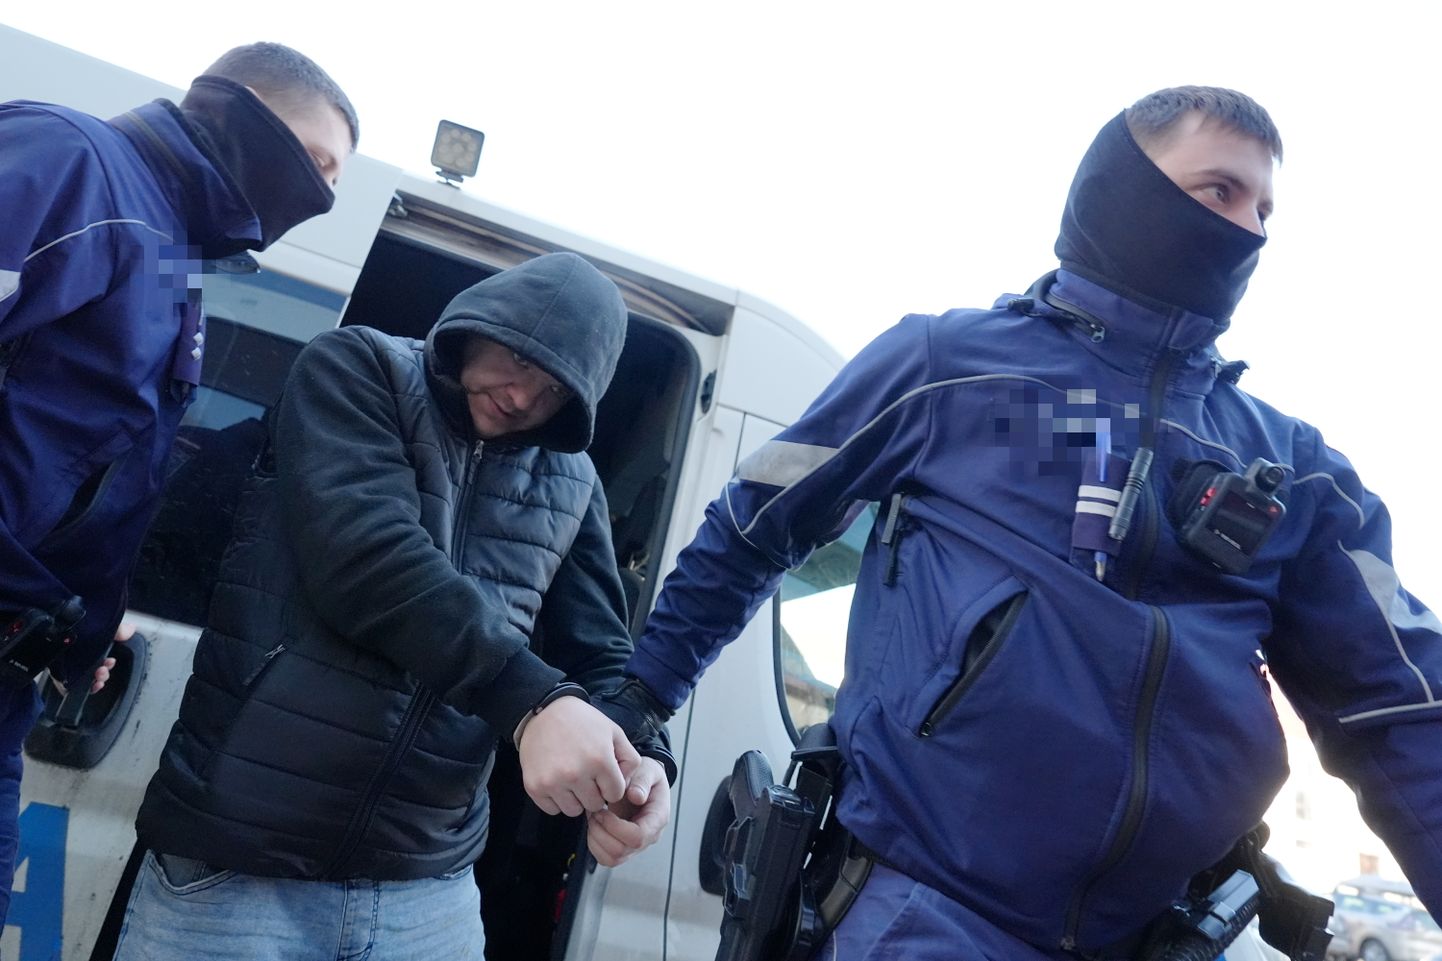 Okupācijas muzeja dedzināšanas lietā aizturētais vīrietis tiek konvojēts uz tiesas sēdi Rīgas pilsētas Vidzemes priekšpilsētas tiesā, kur lems par apcietinājuma piemērošanu.